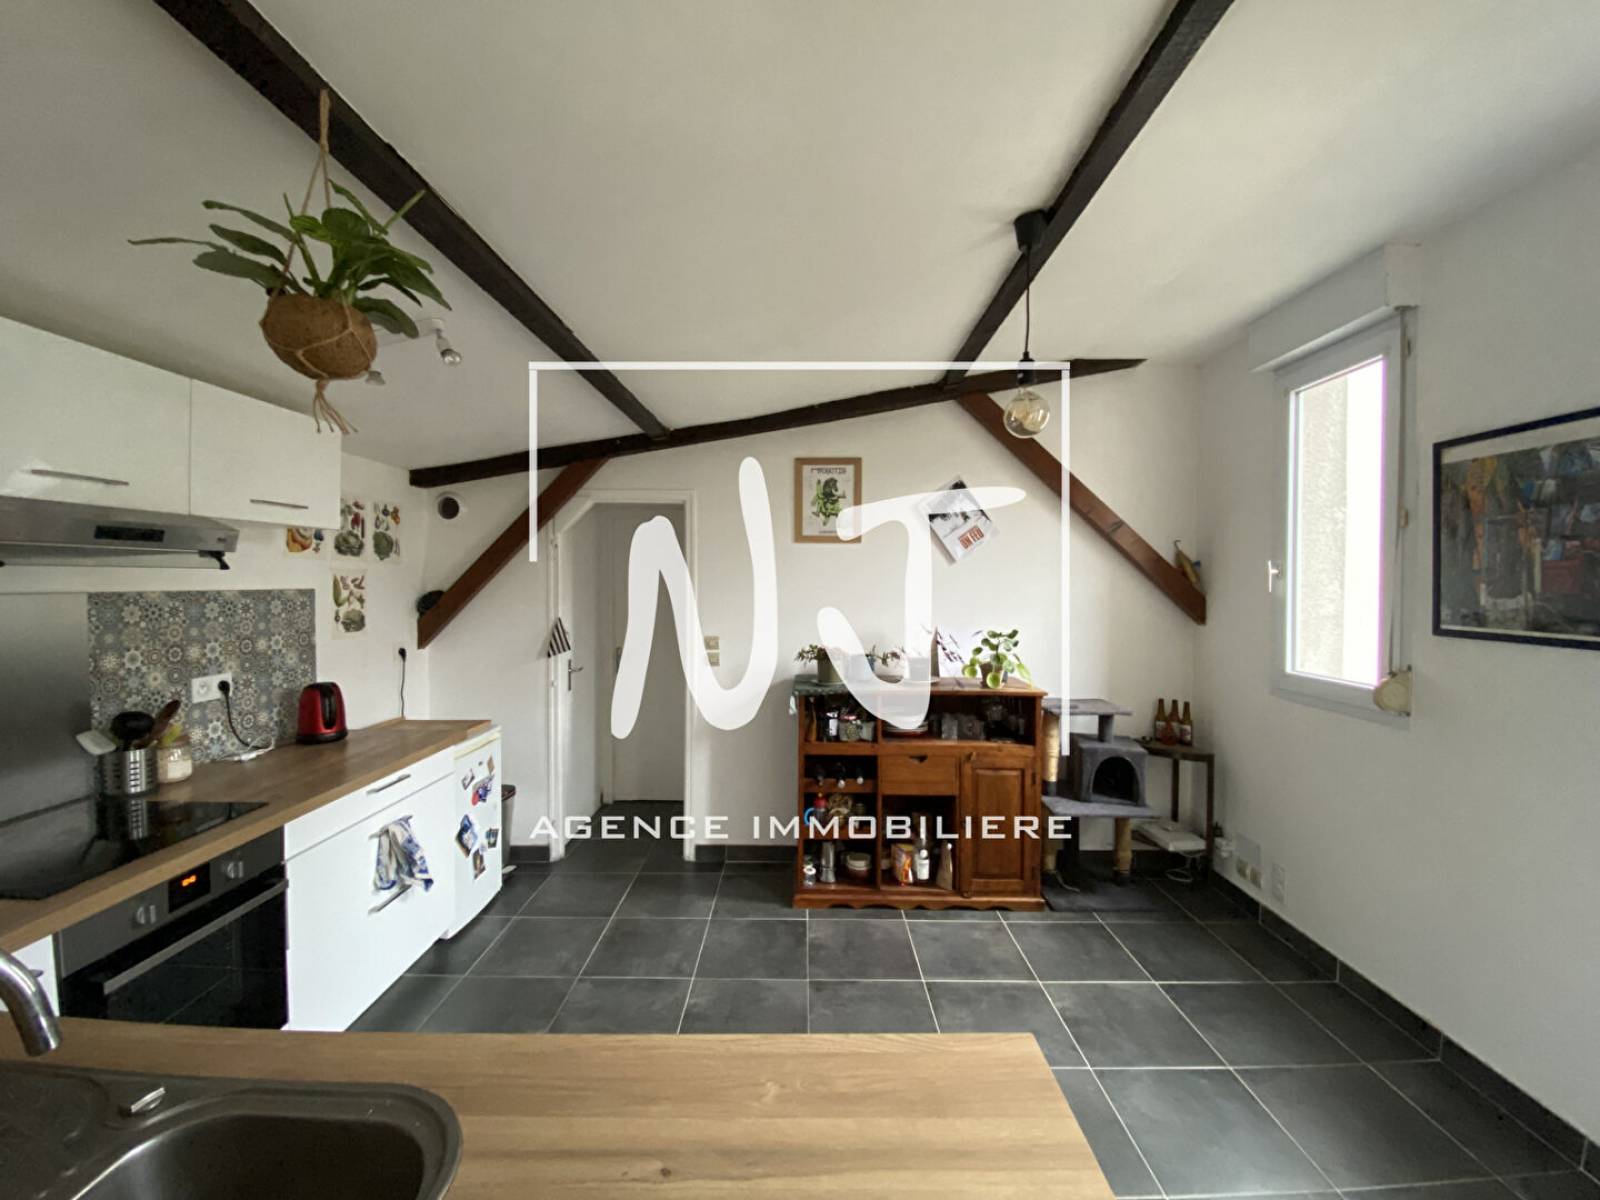 Appartement avec une pièce de vie de 40 m² et sa cuisine ouverte